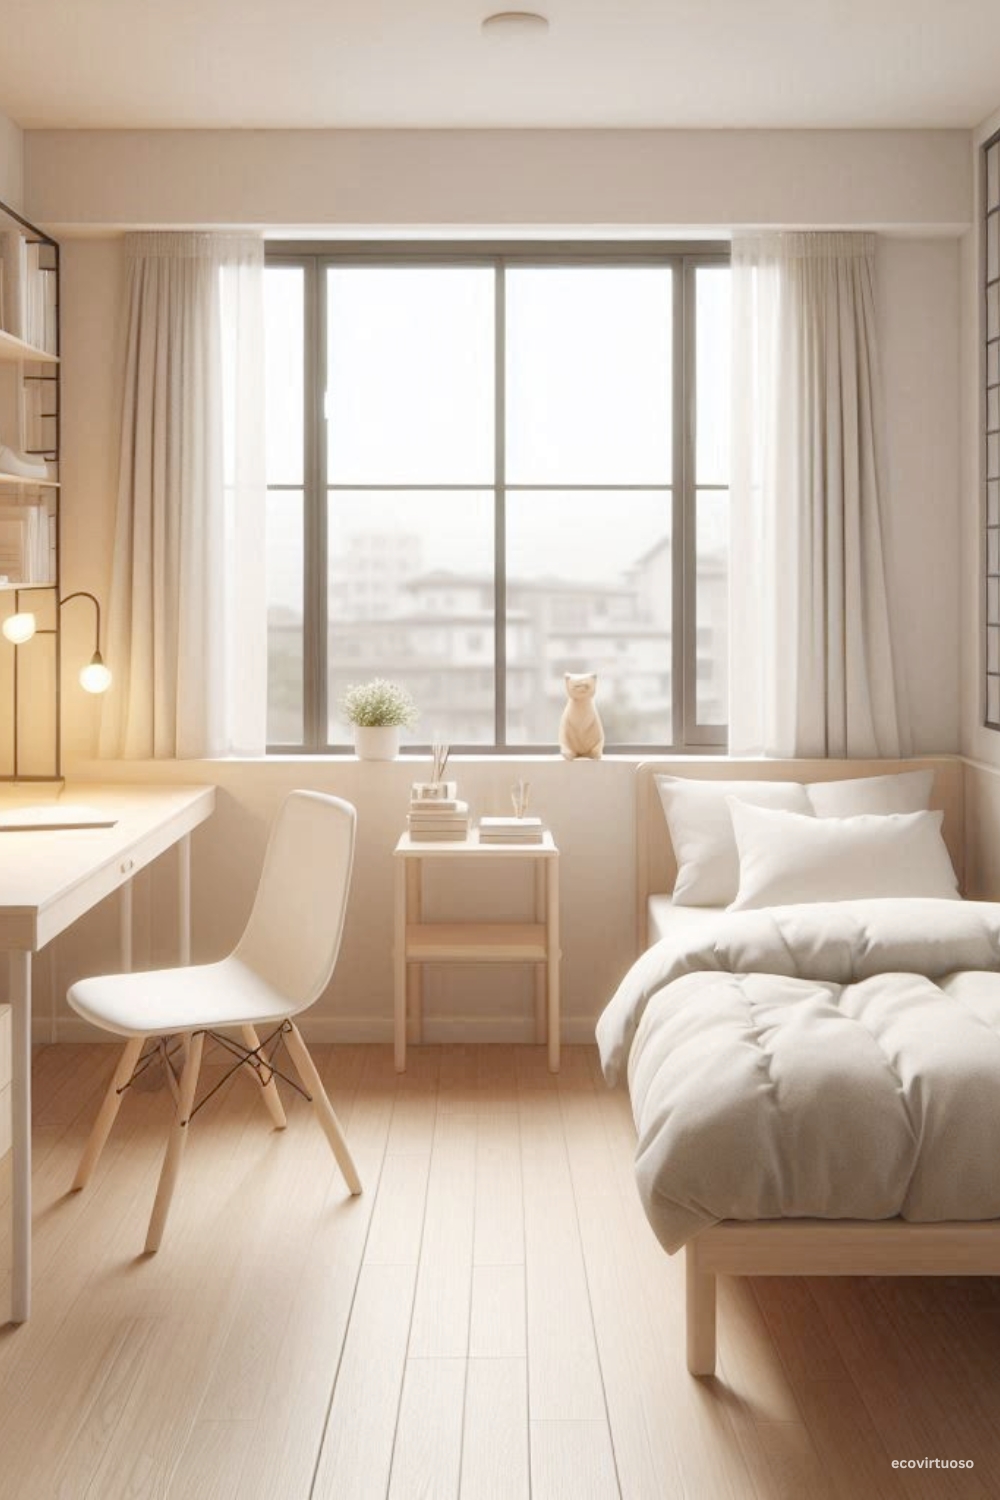 a minimalist bedroom